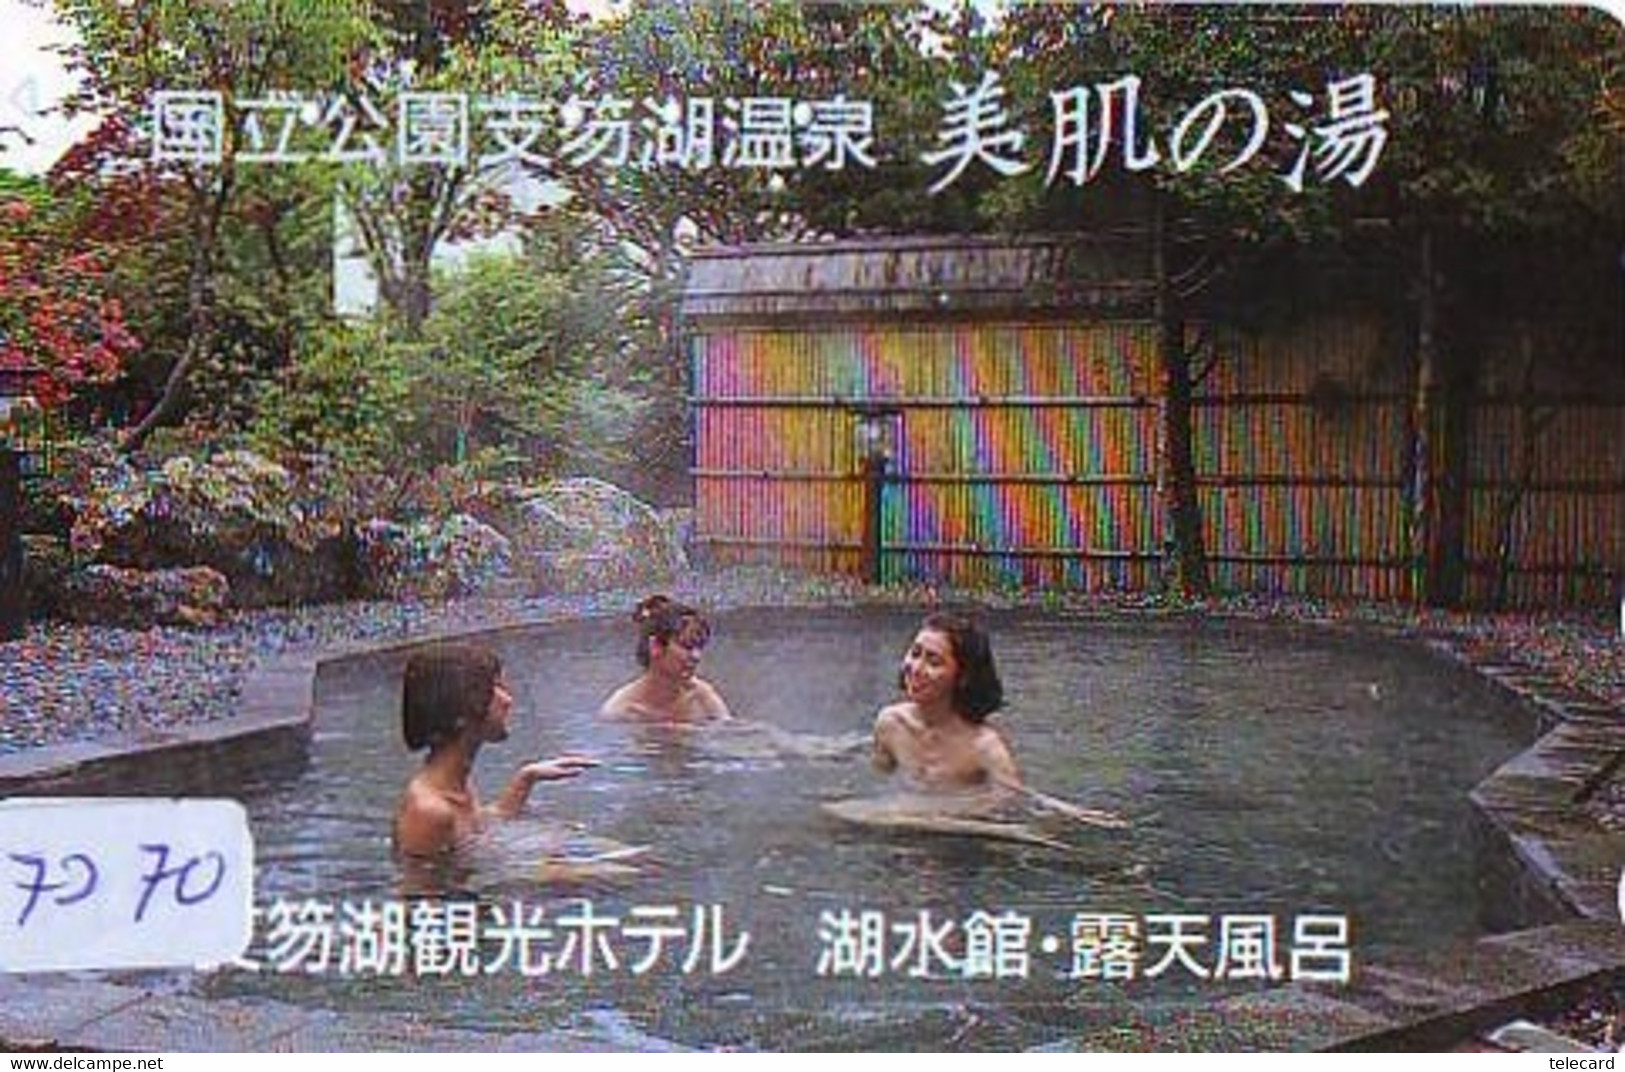 Télécarte Japon * FEMME EROTIQUE (7270) BATH * PHONECARD JAPAN * TELEFONKARTE *  BATHCLOTHES LINGERIE - Mode